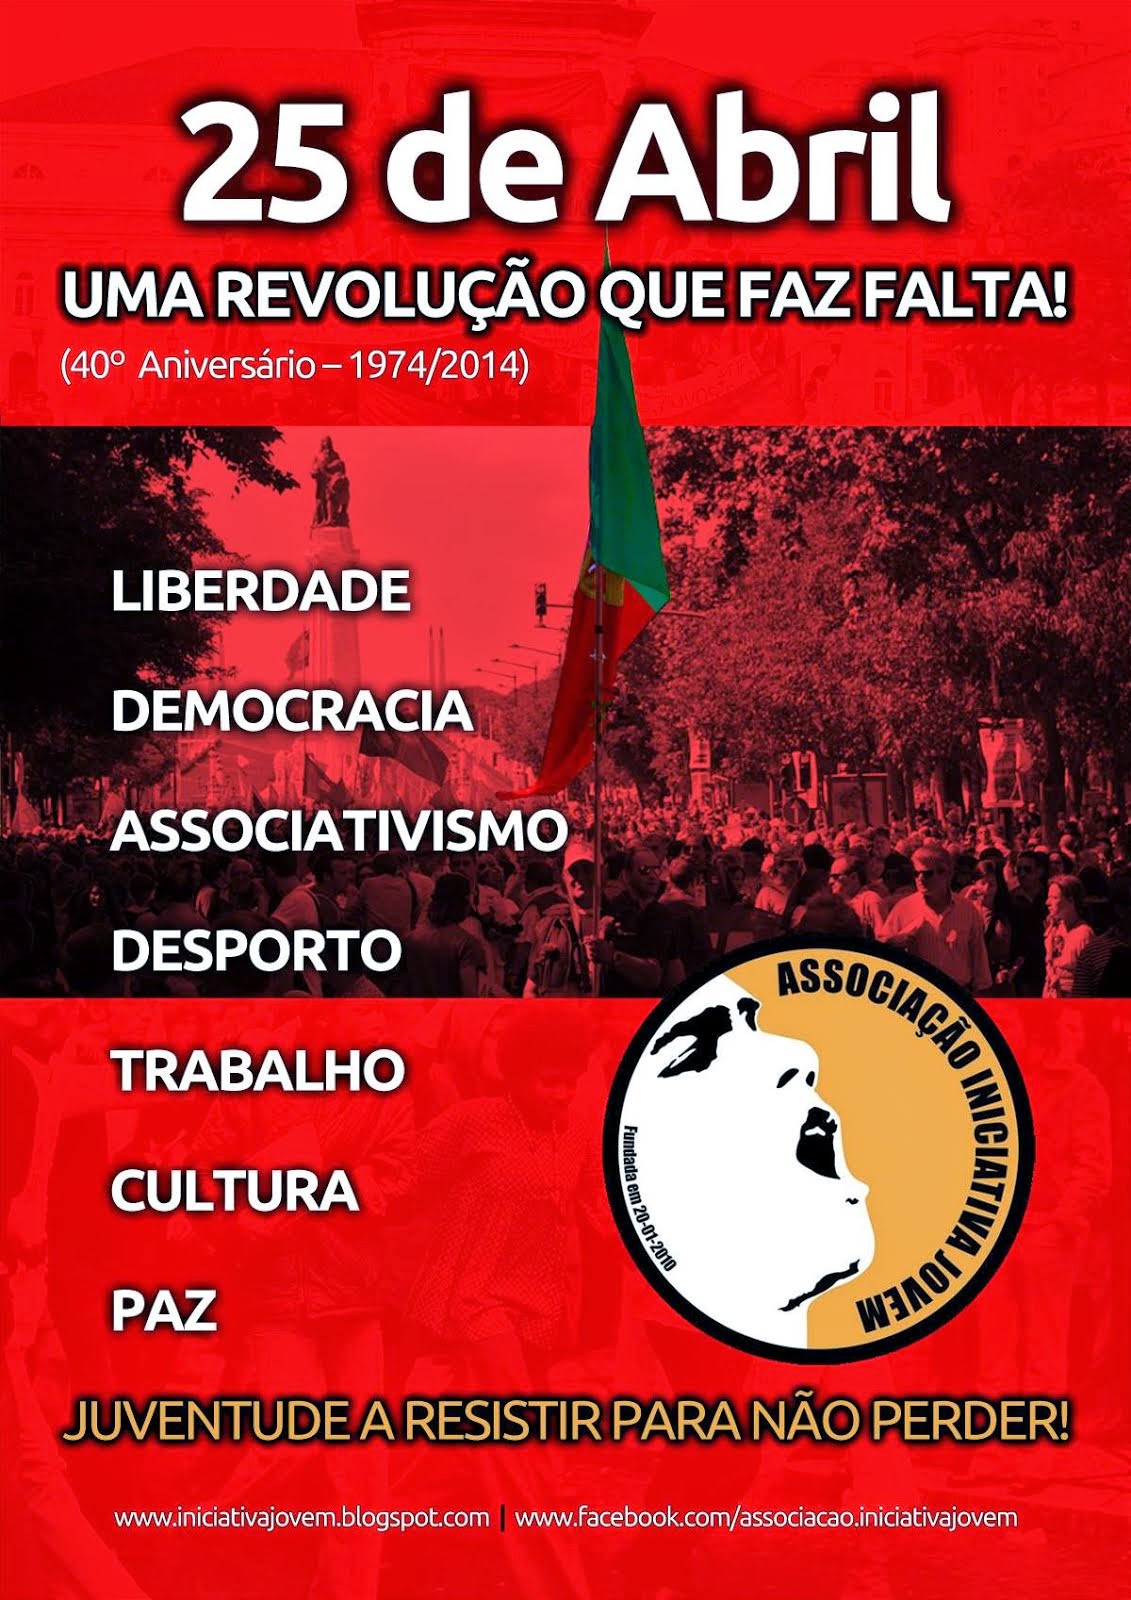 25 de Abril uma Revolução que faz FALTA! (40º Aniversário - 1974/2014)